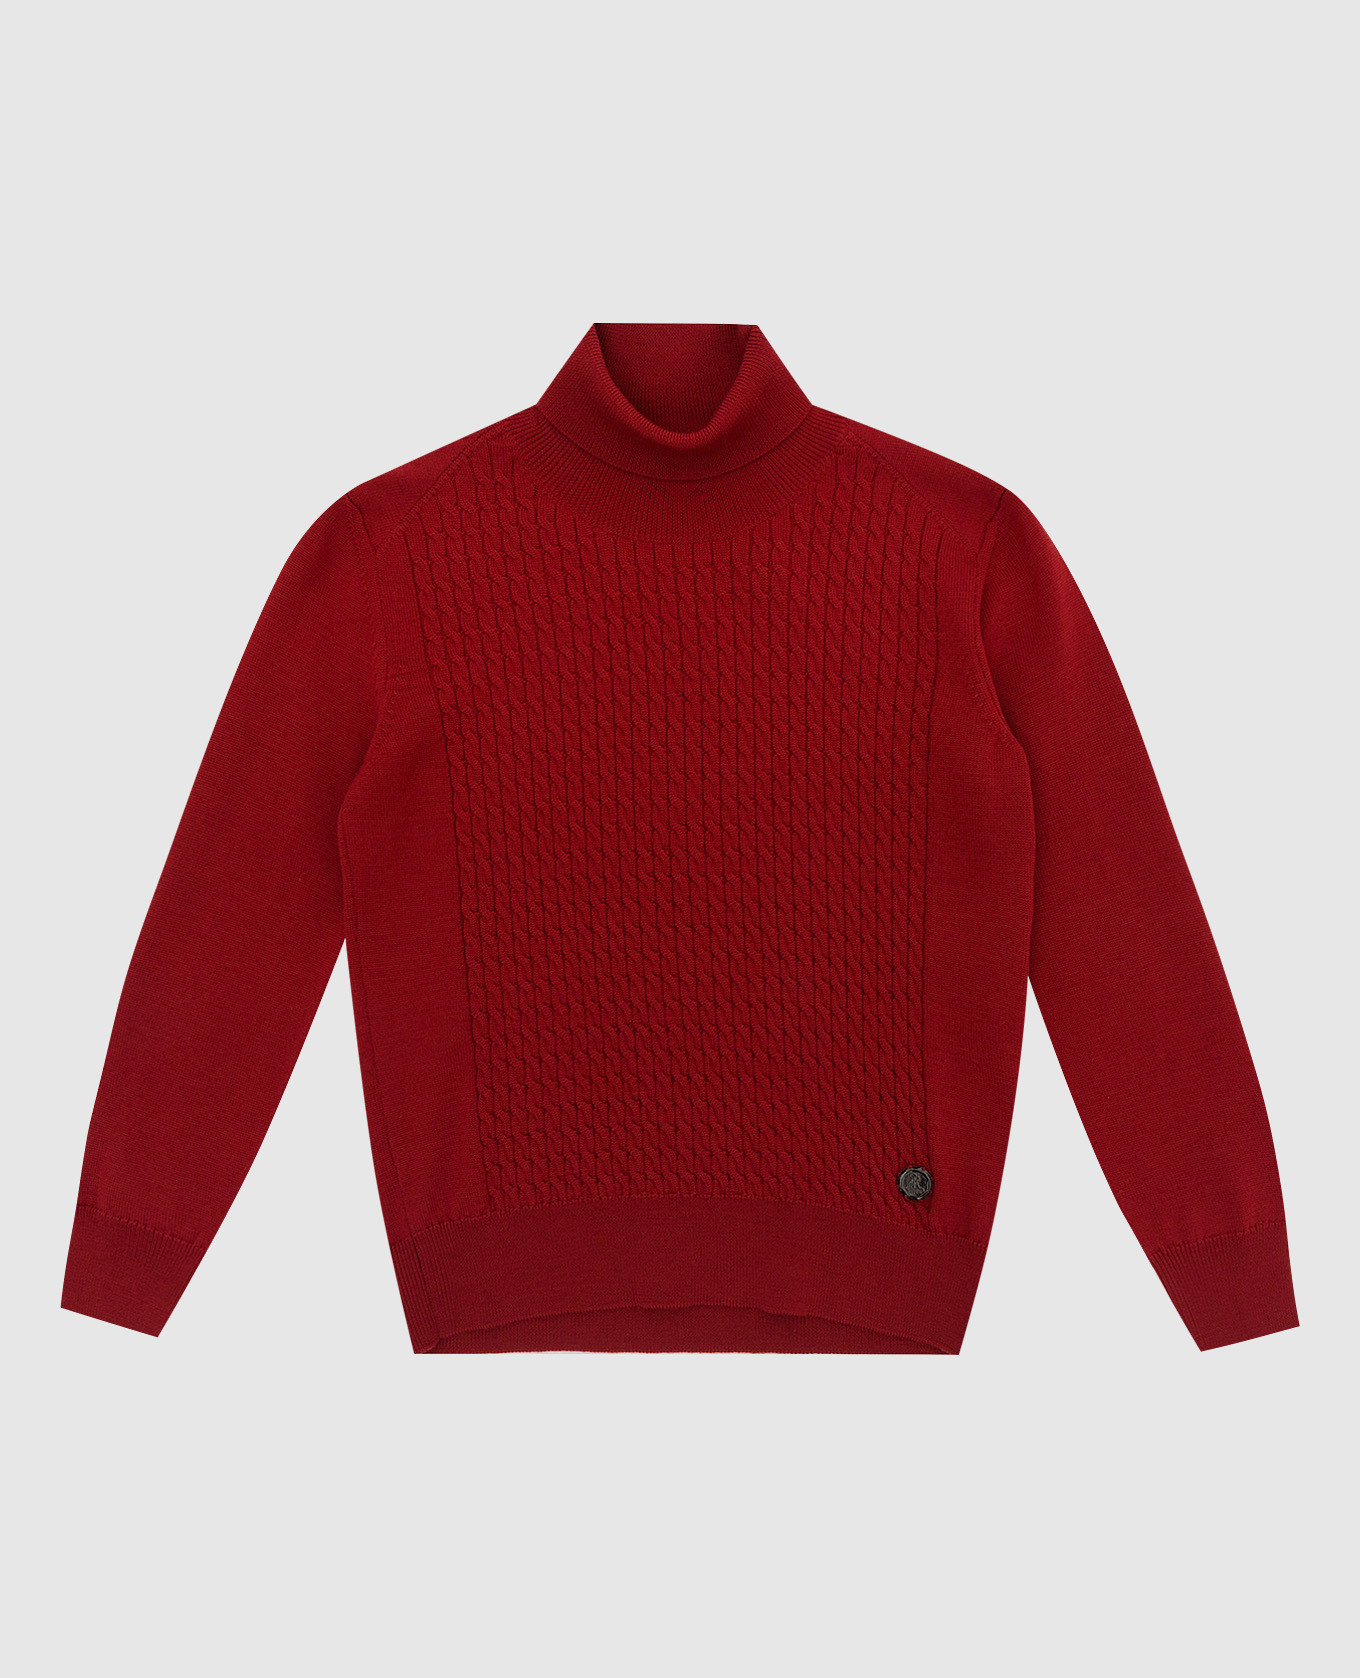 Stefano Ricci Детский светло-бордовый свитер из шерсти в узор KY02026D01Y19414